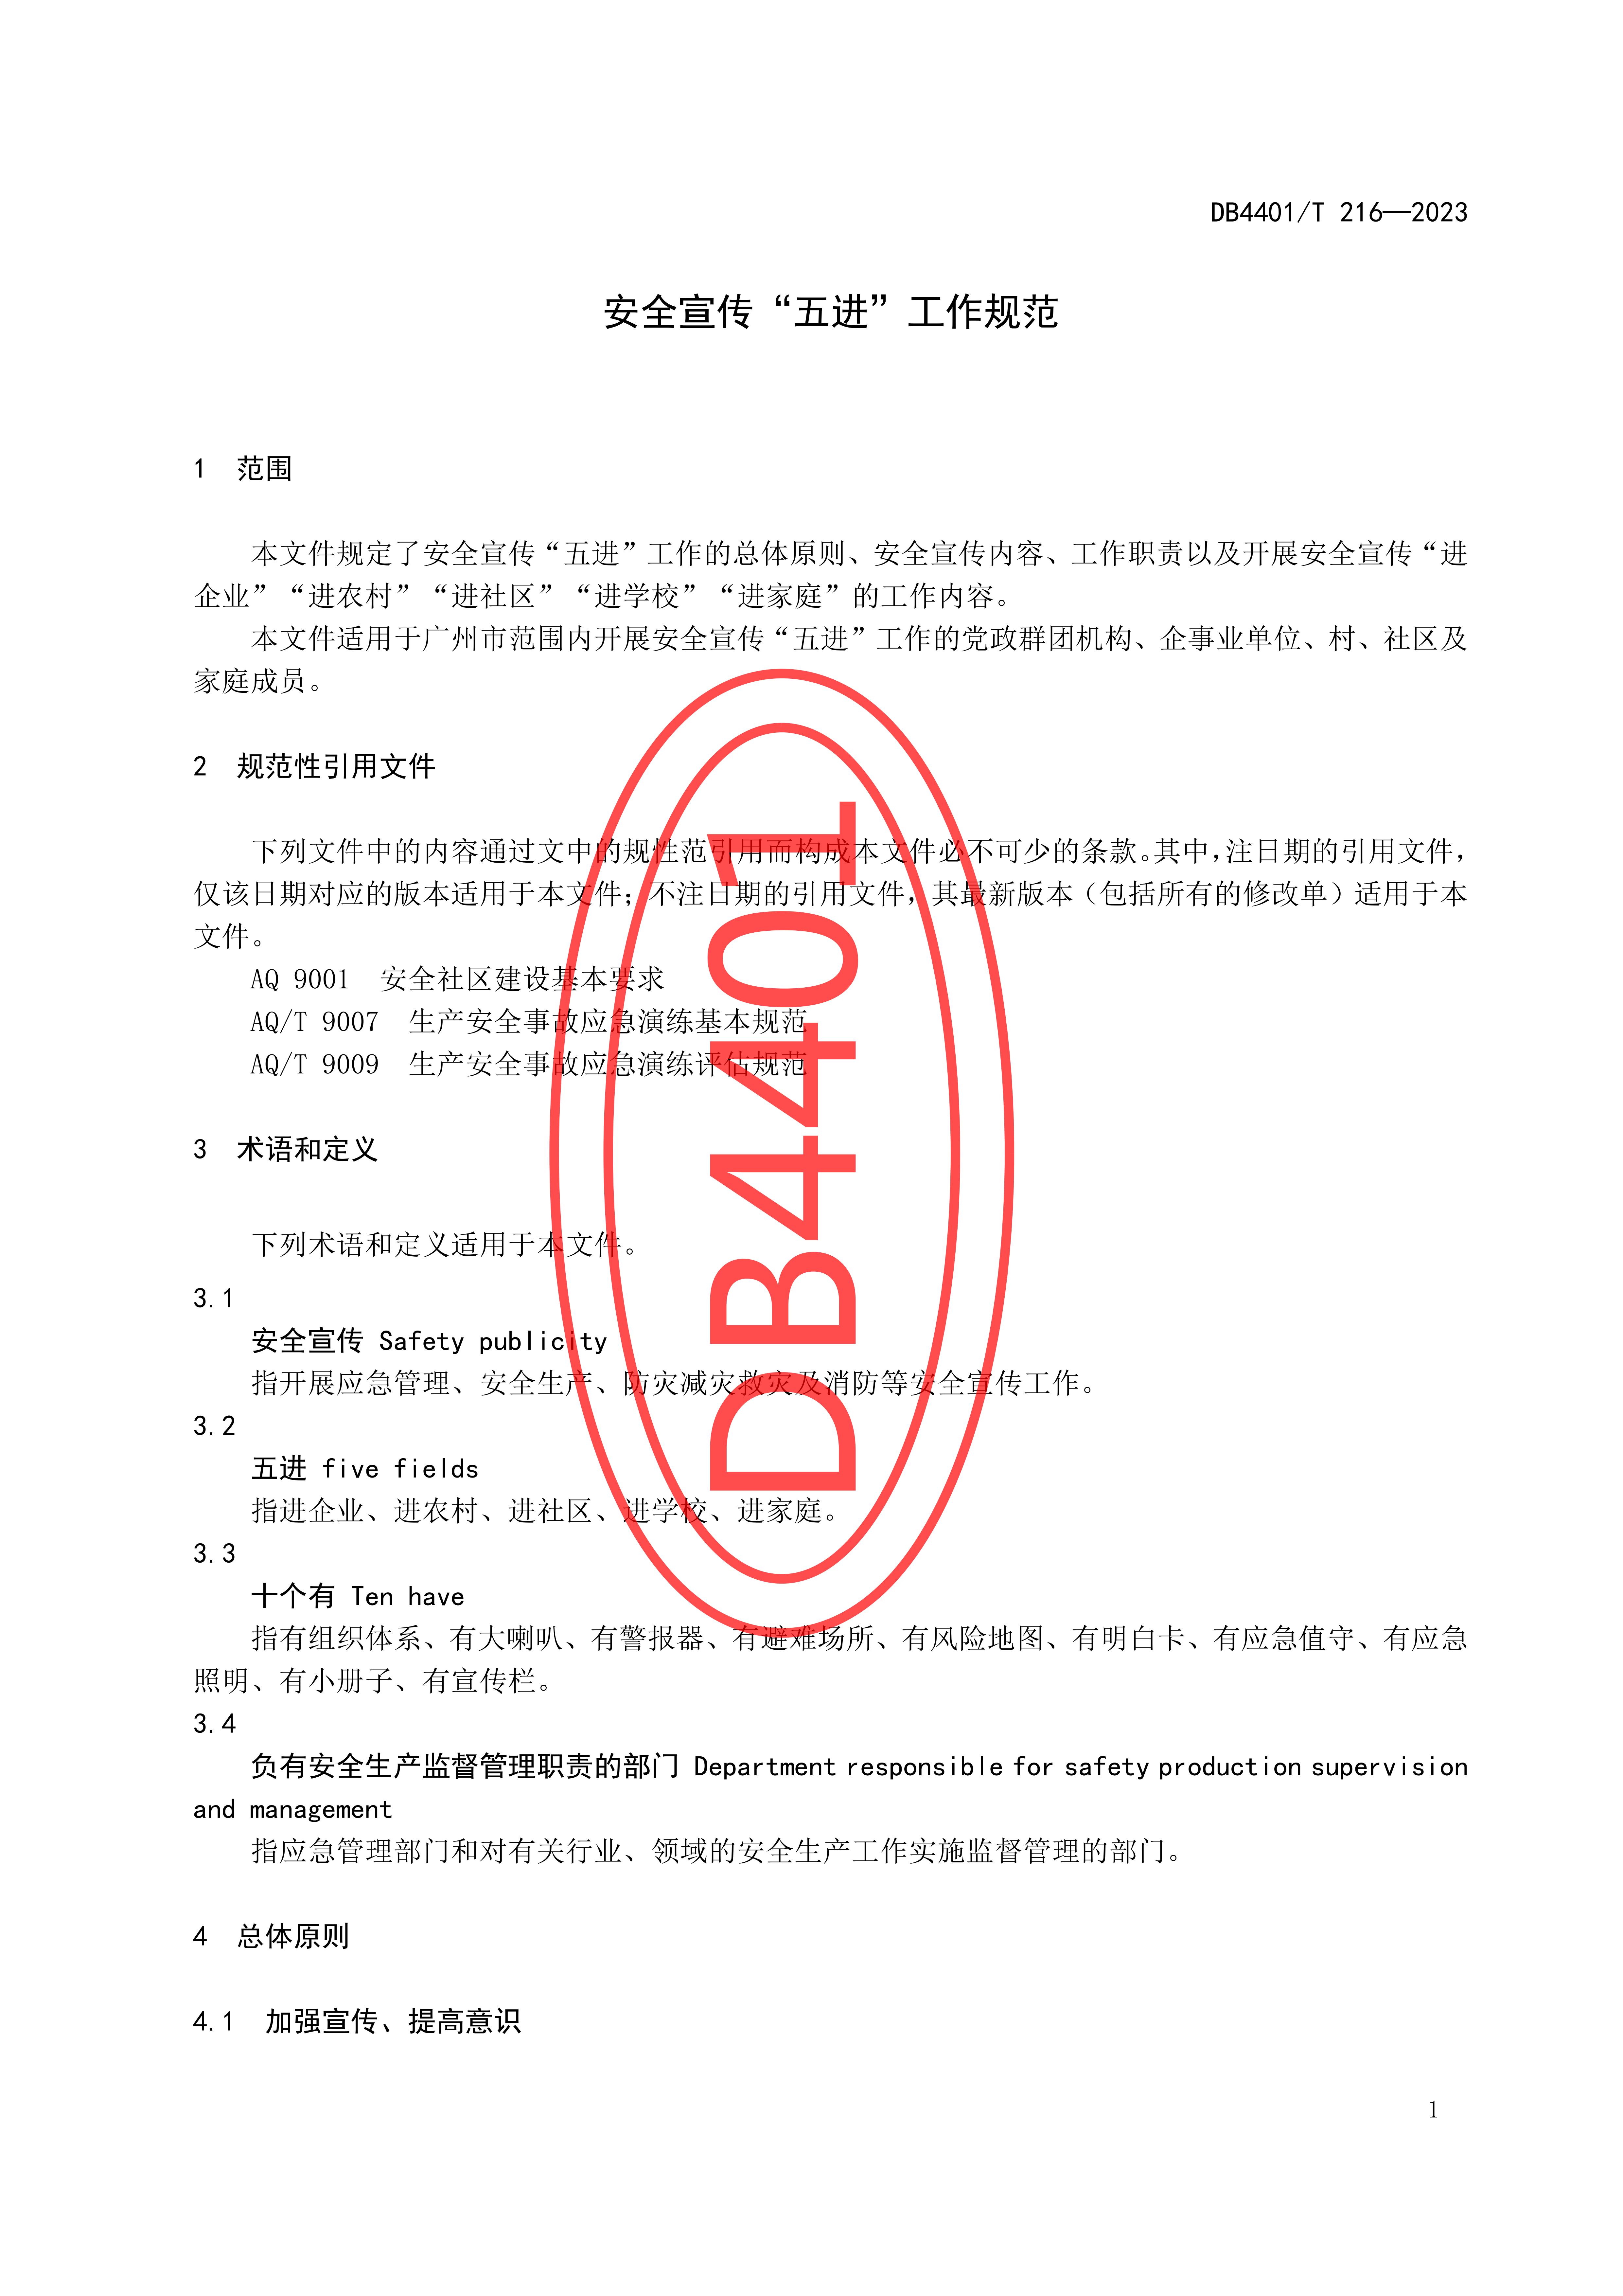 (终稿 发布稿)广州市地方标准《安全宣传“五进”工作规范》20230625_06.jpg